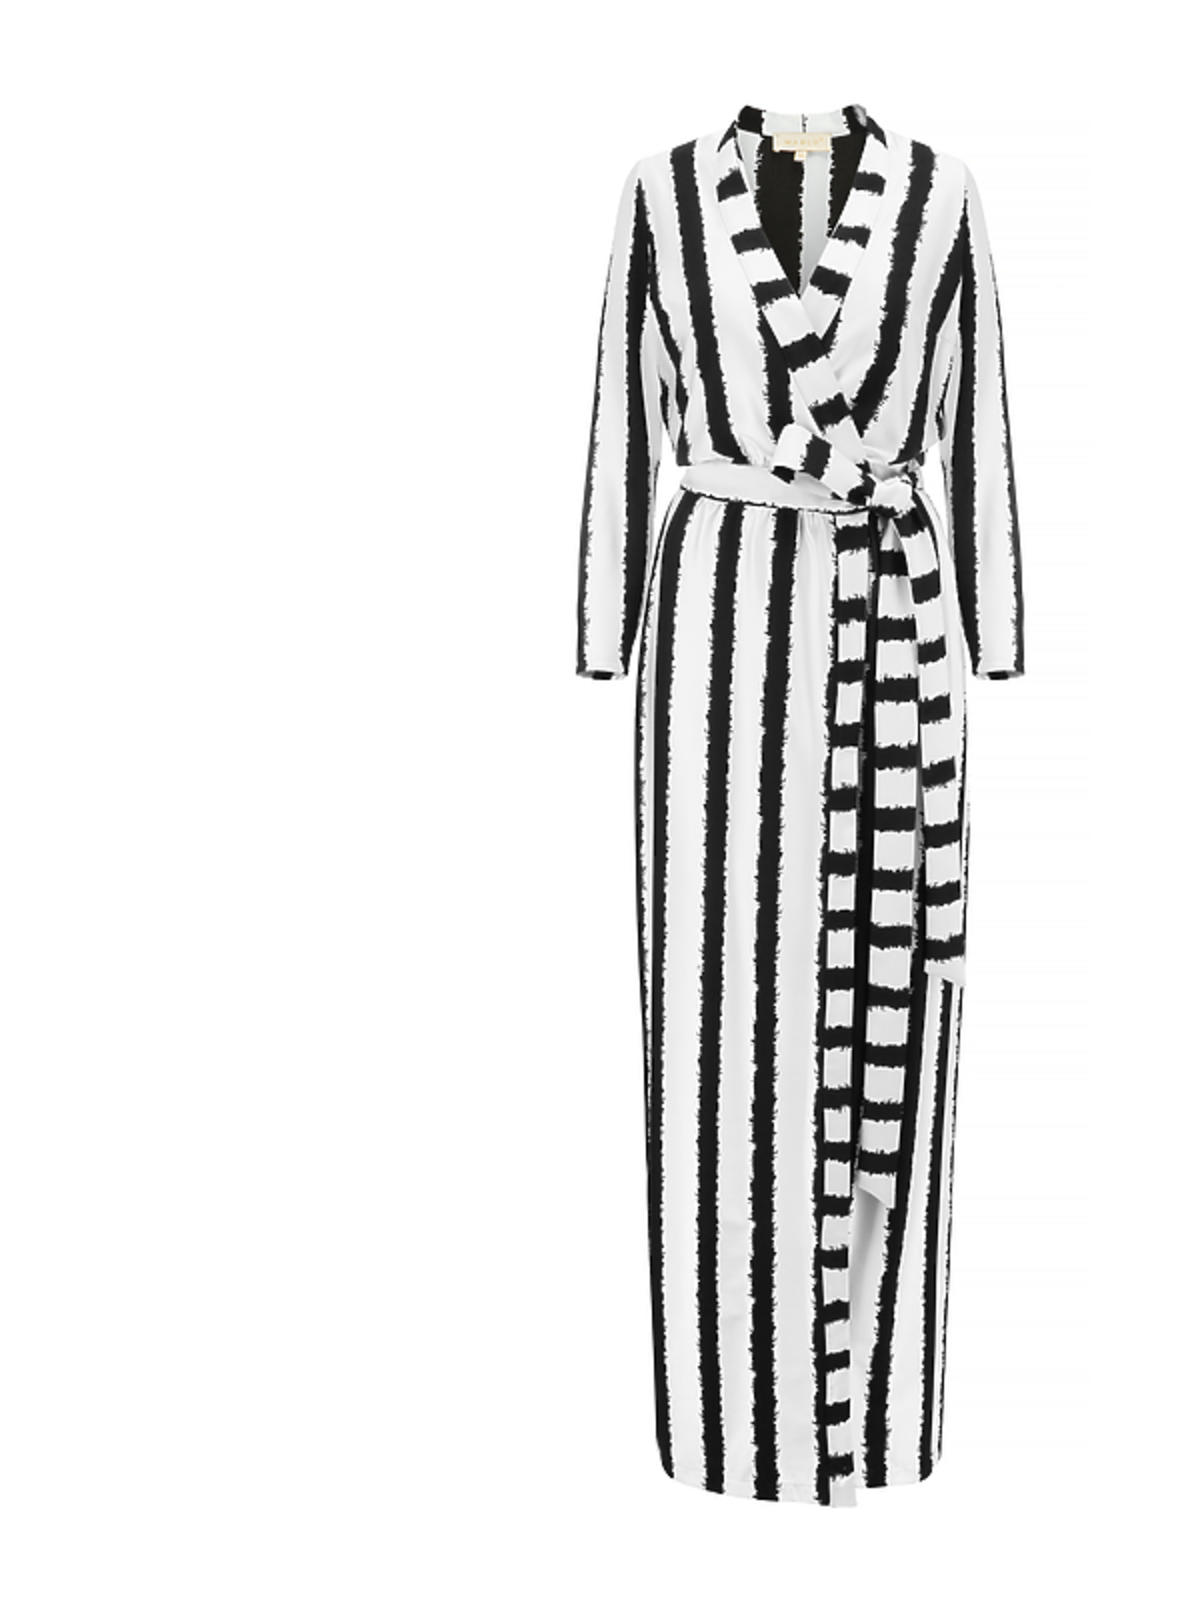 MARLU biała, asymetryczna sukienka z kwiatowym wzorem 1890 zł